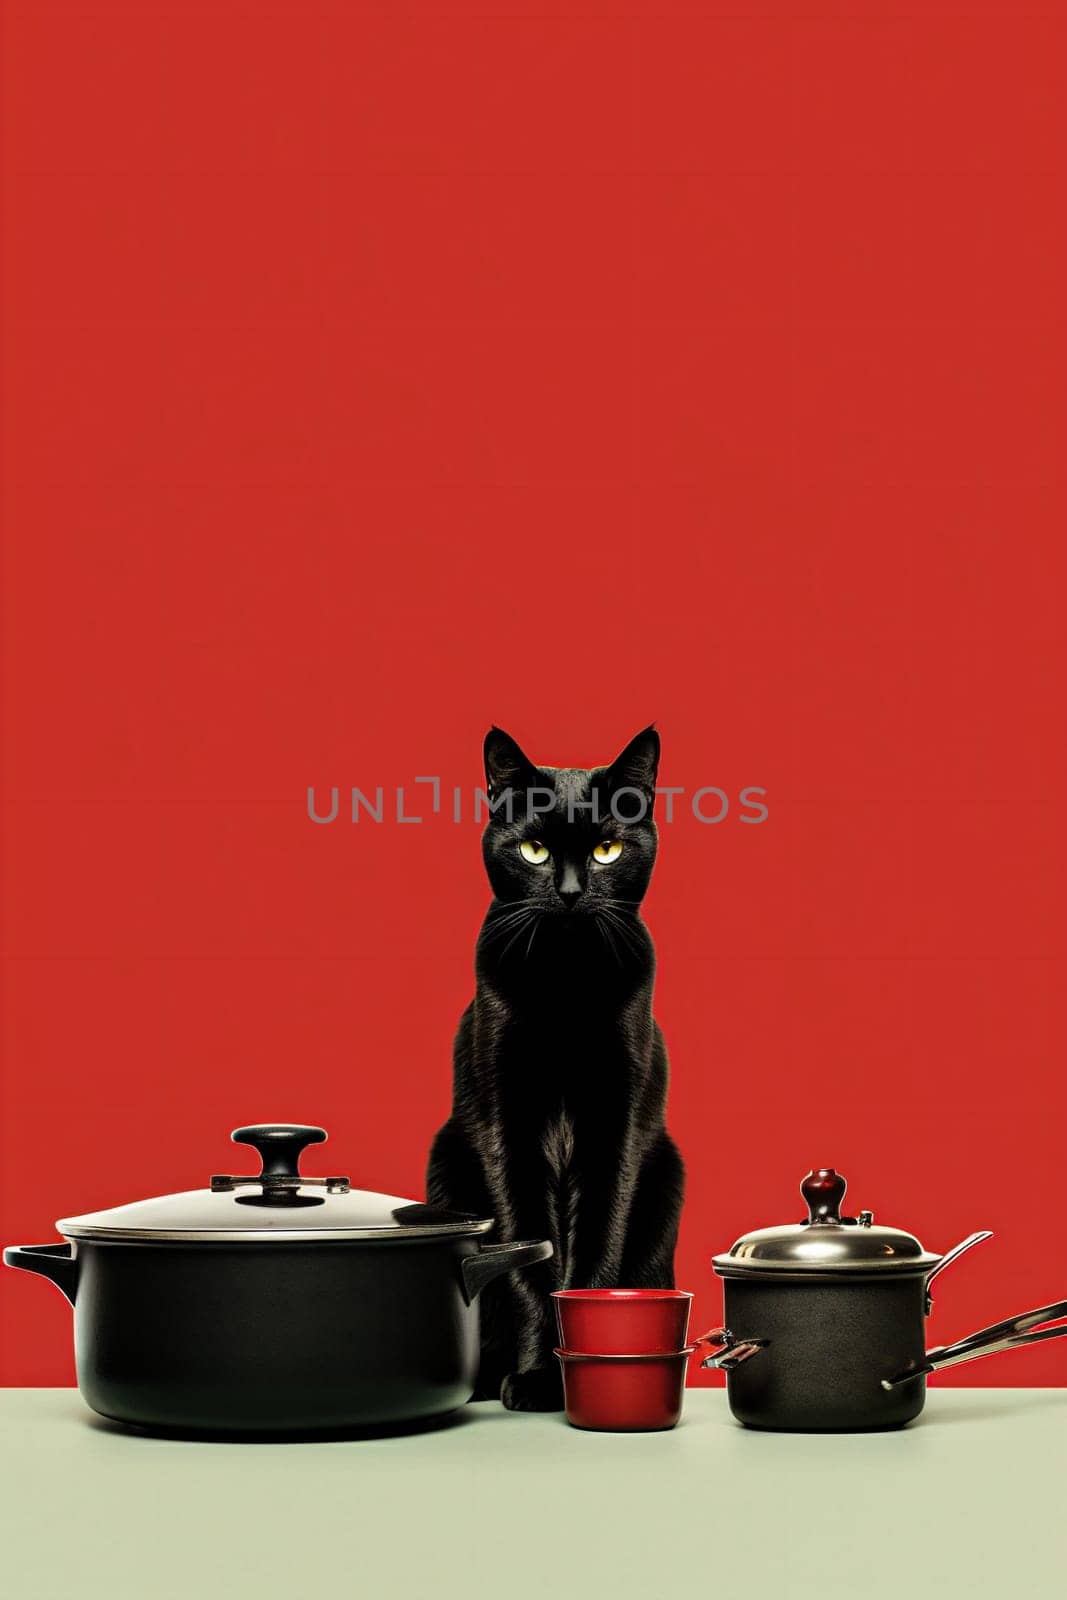 Sleek and elegant black cat sitting on red background by IrynaMelnyk